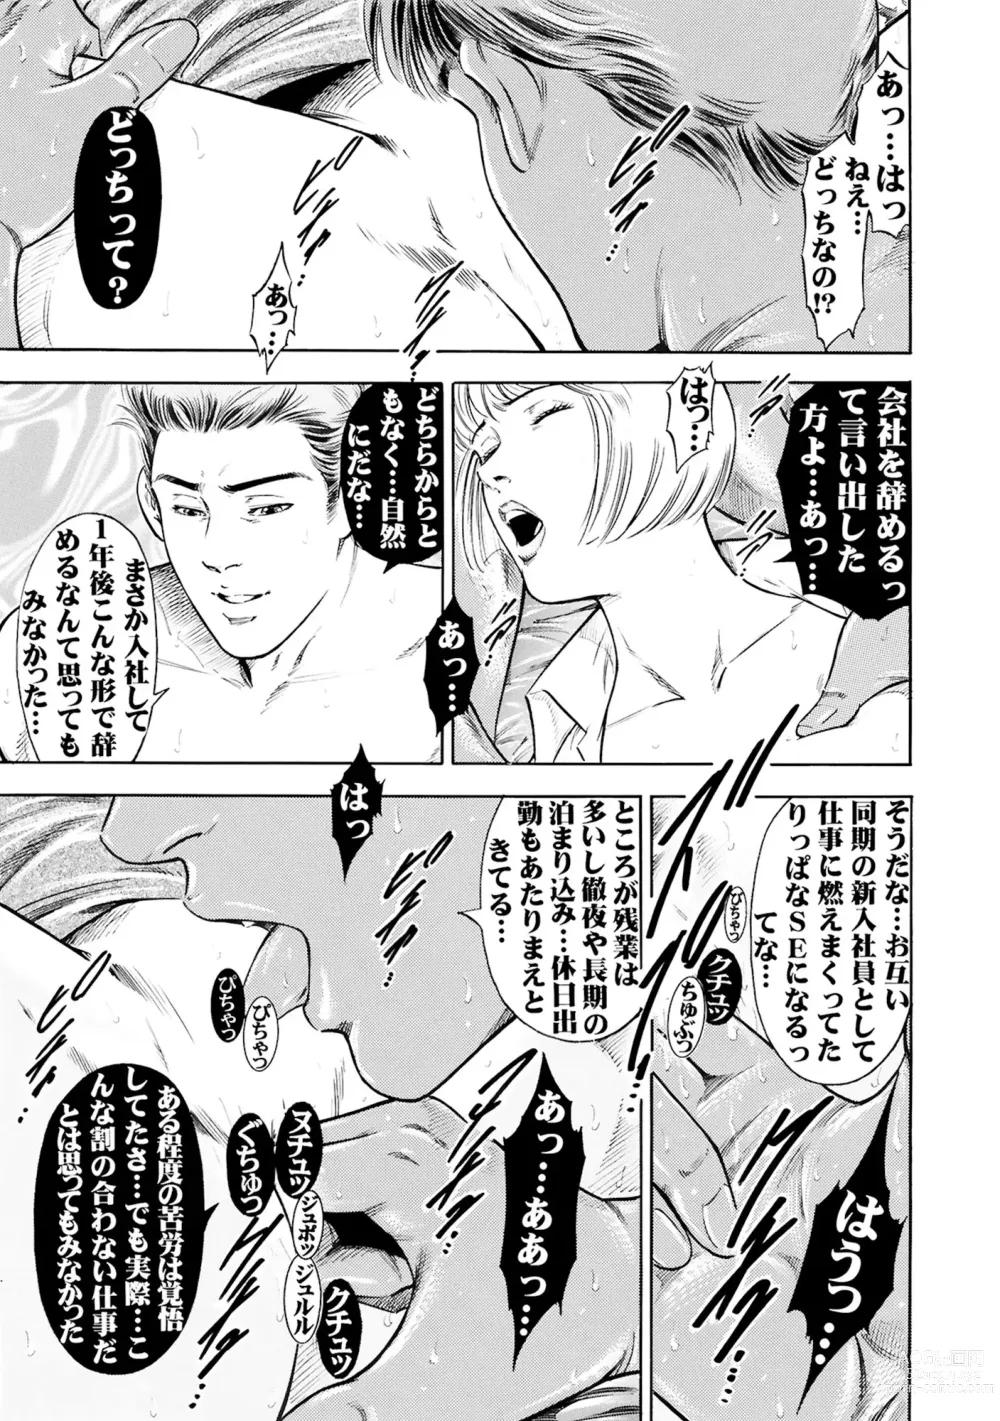 Page 19 of manga Jitsuroku Shouwaru 3 Bijin Joushi Biyaku o Nomasare Buka no SEX Doll ni